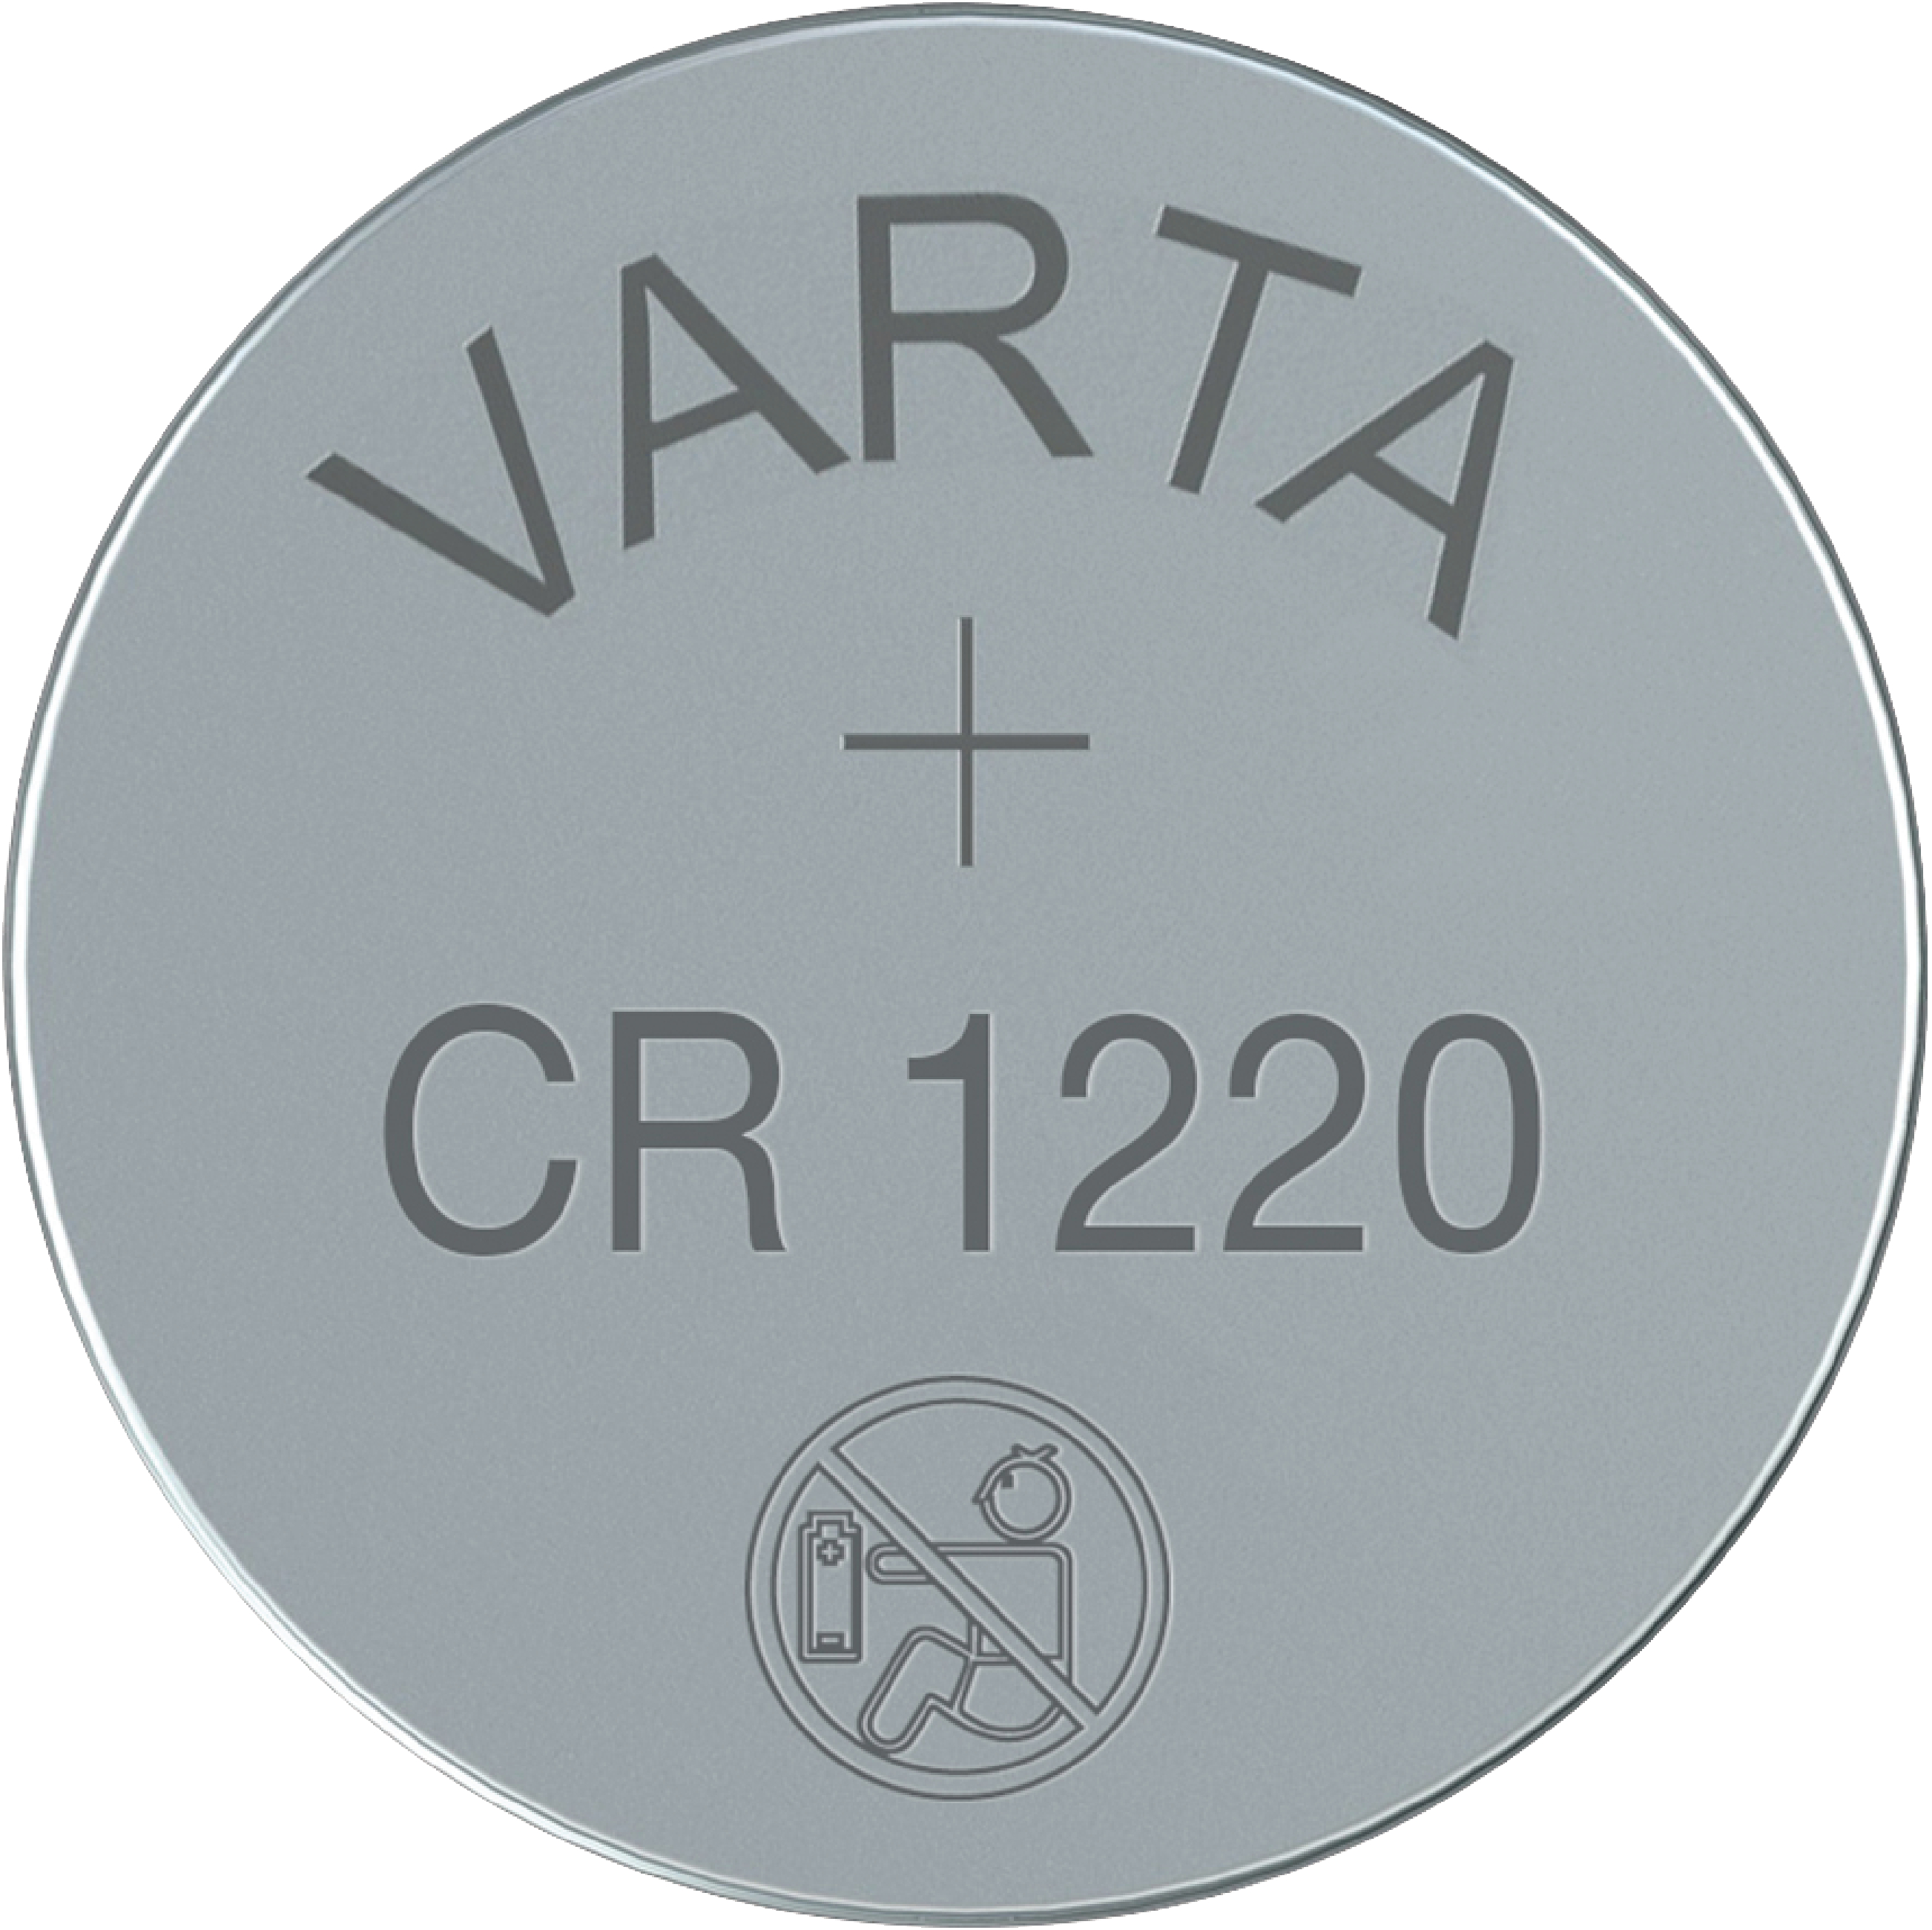 Varta - Pile Lithium - Bouton CR2032 3V - Non rechargeable - Pour appareils  de haute technologie : Varta: : High-Tech